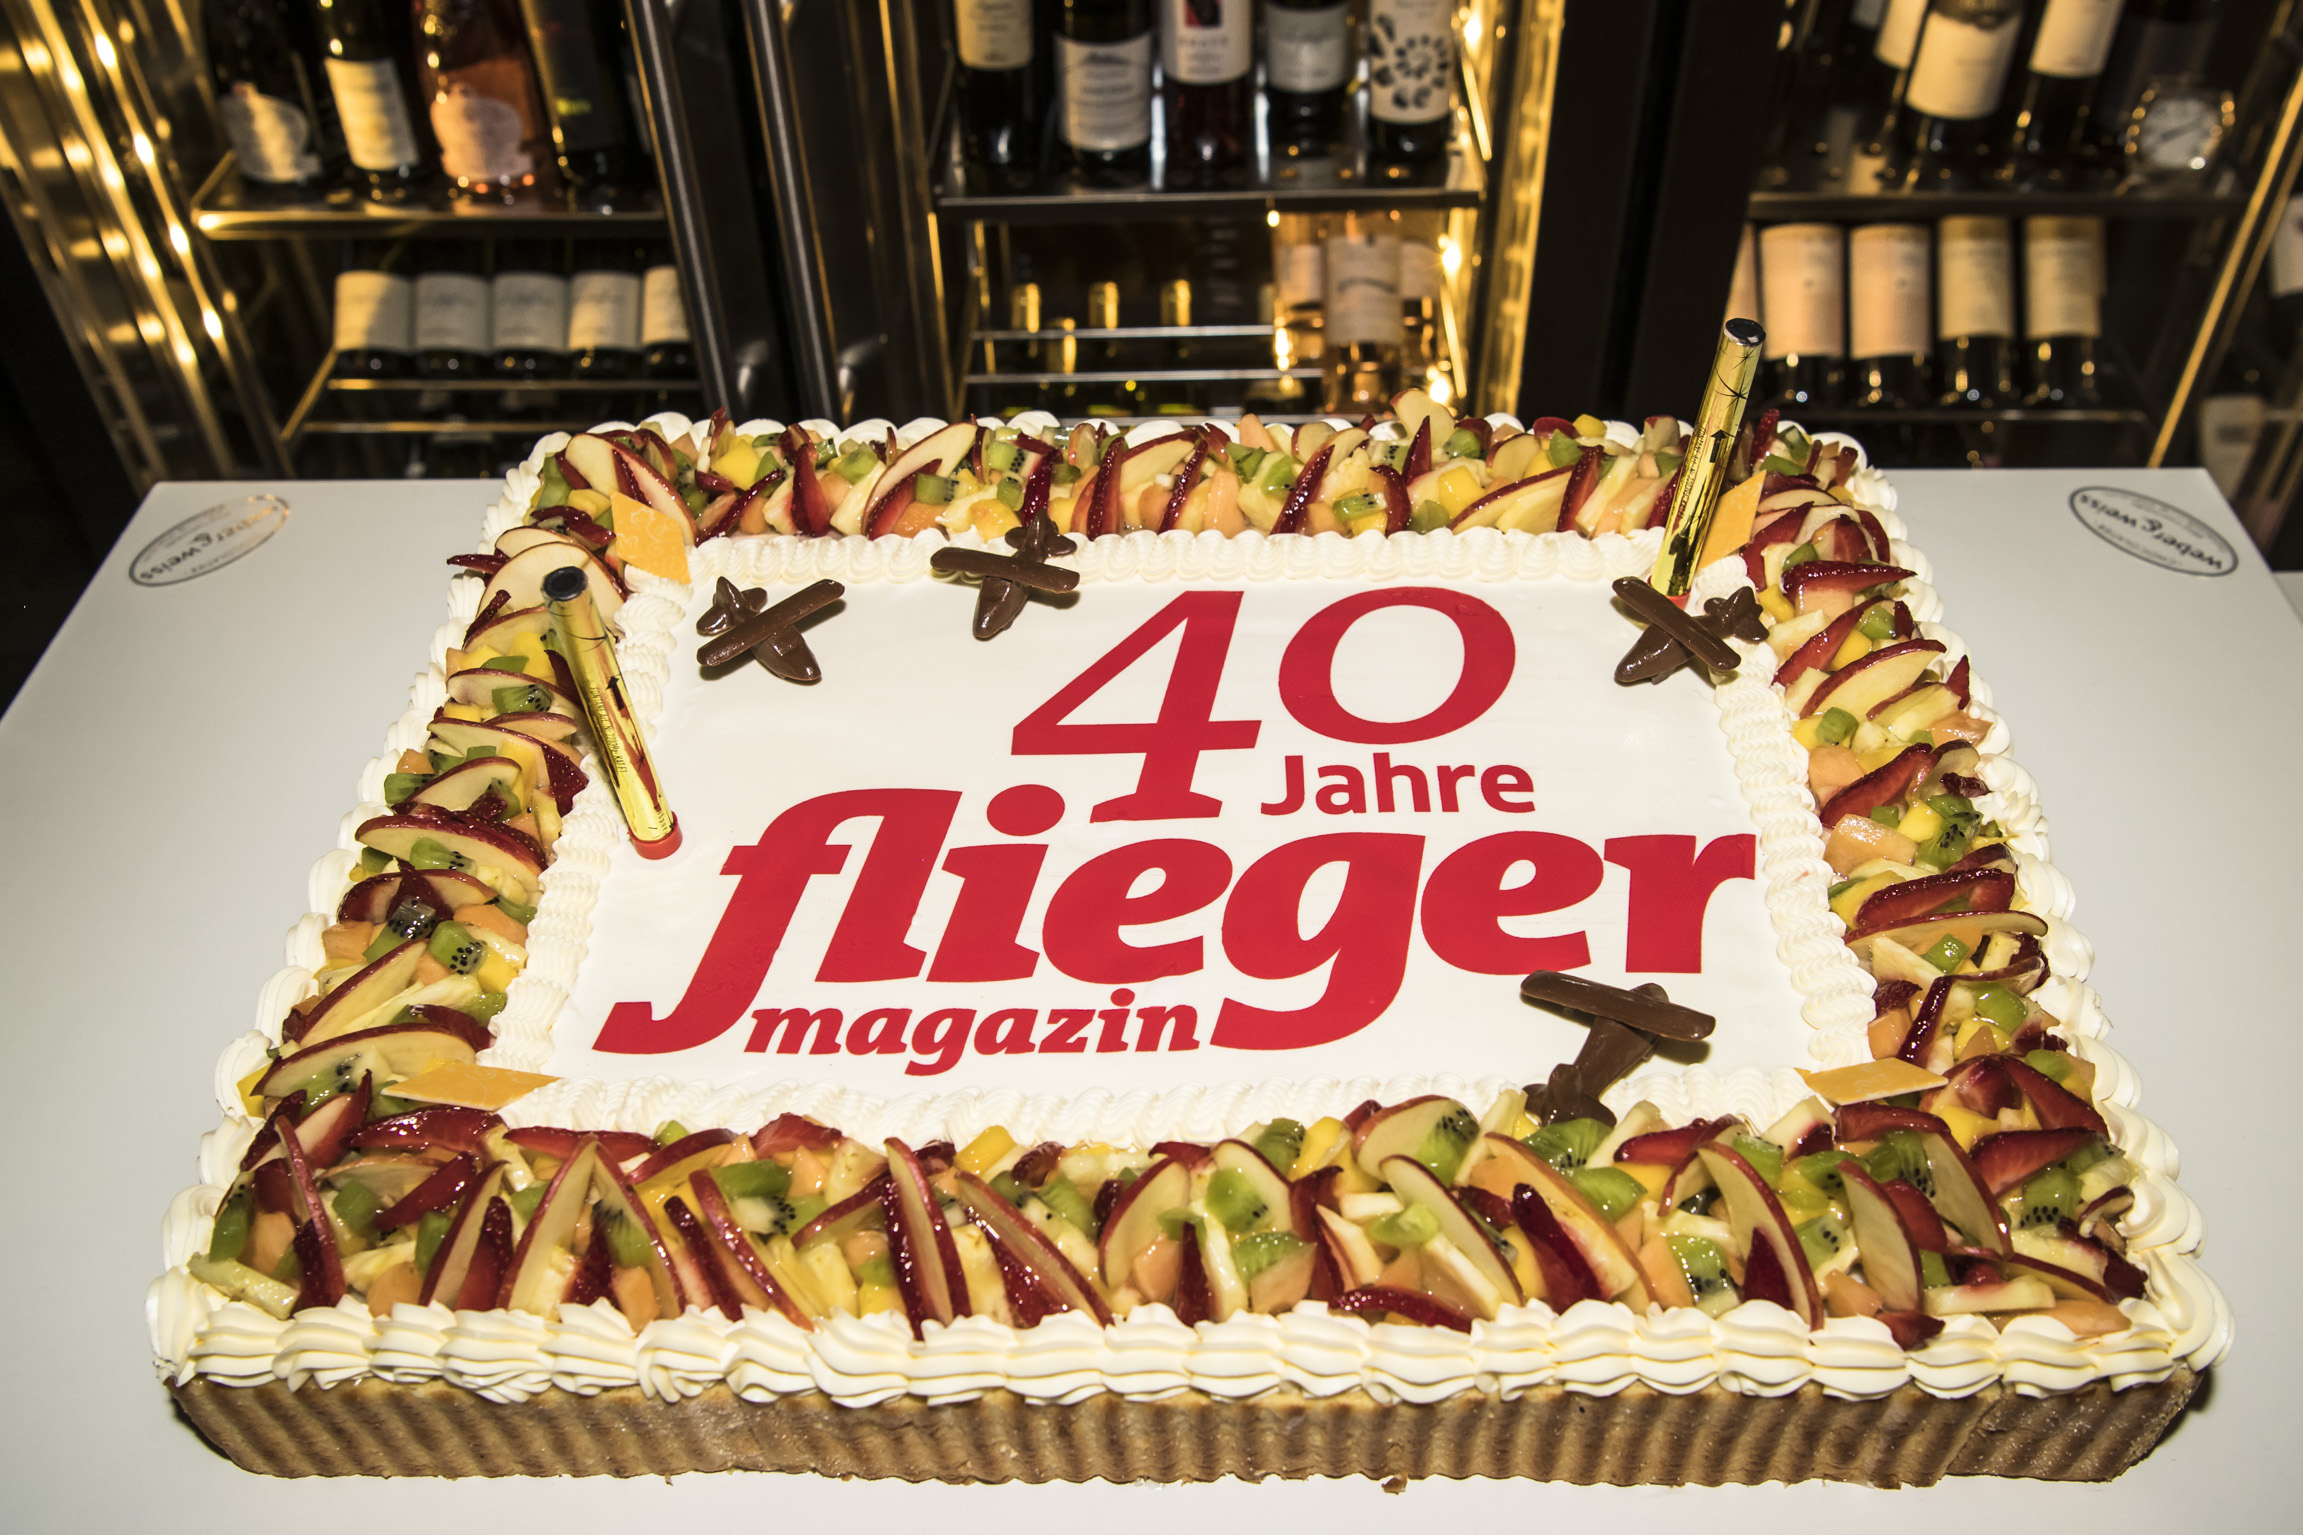 Geburtstagstorte zum 40jährigen fliegermagazin-Jubiläum